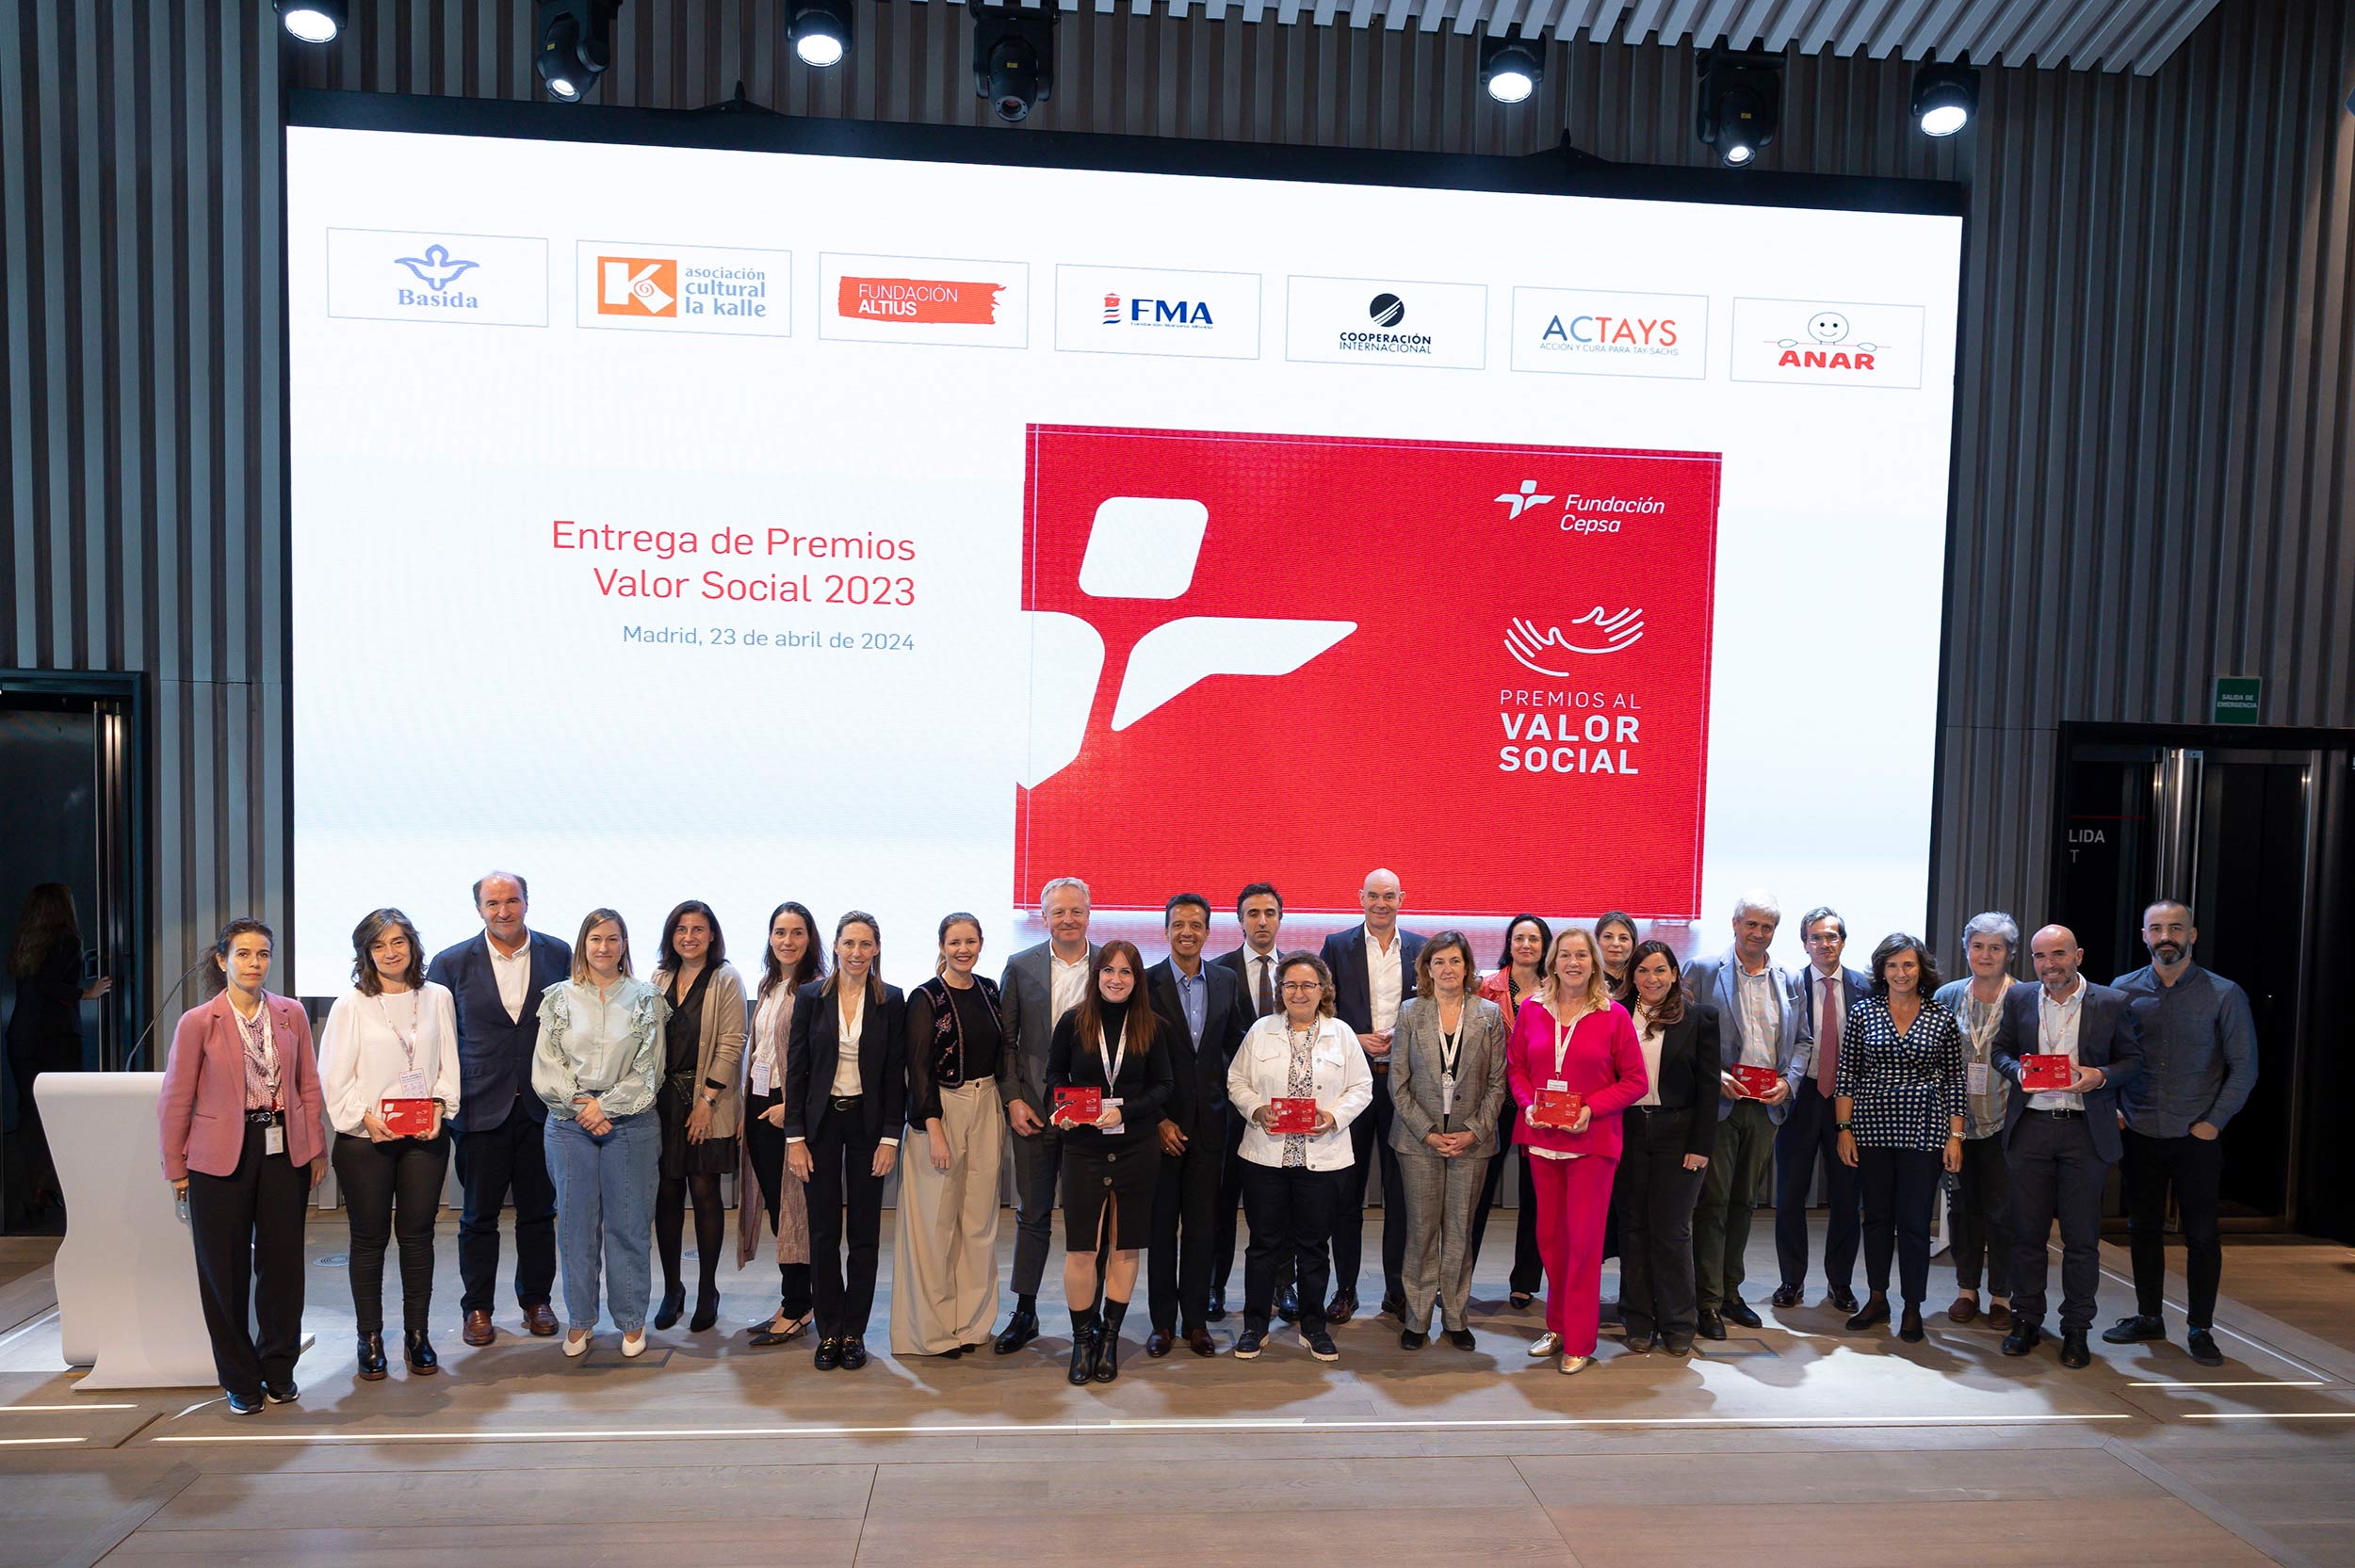 Fundación ANAR recibe el Premio al Valor Social de Fundación Cepsa